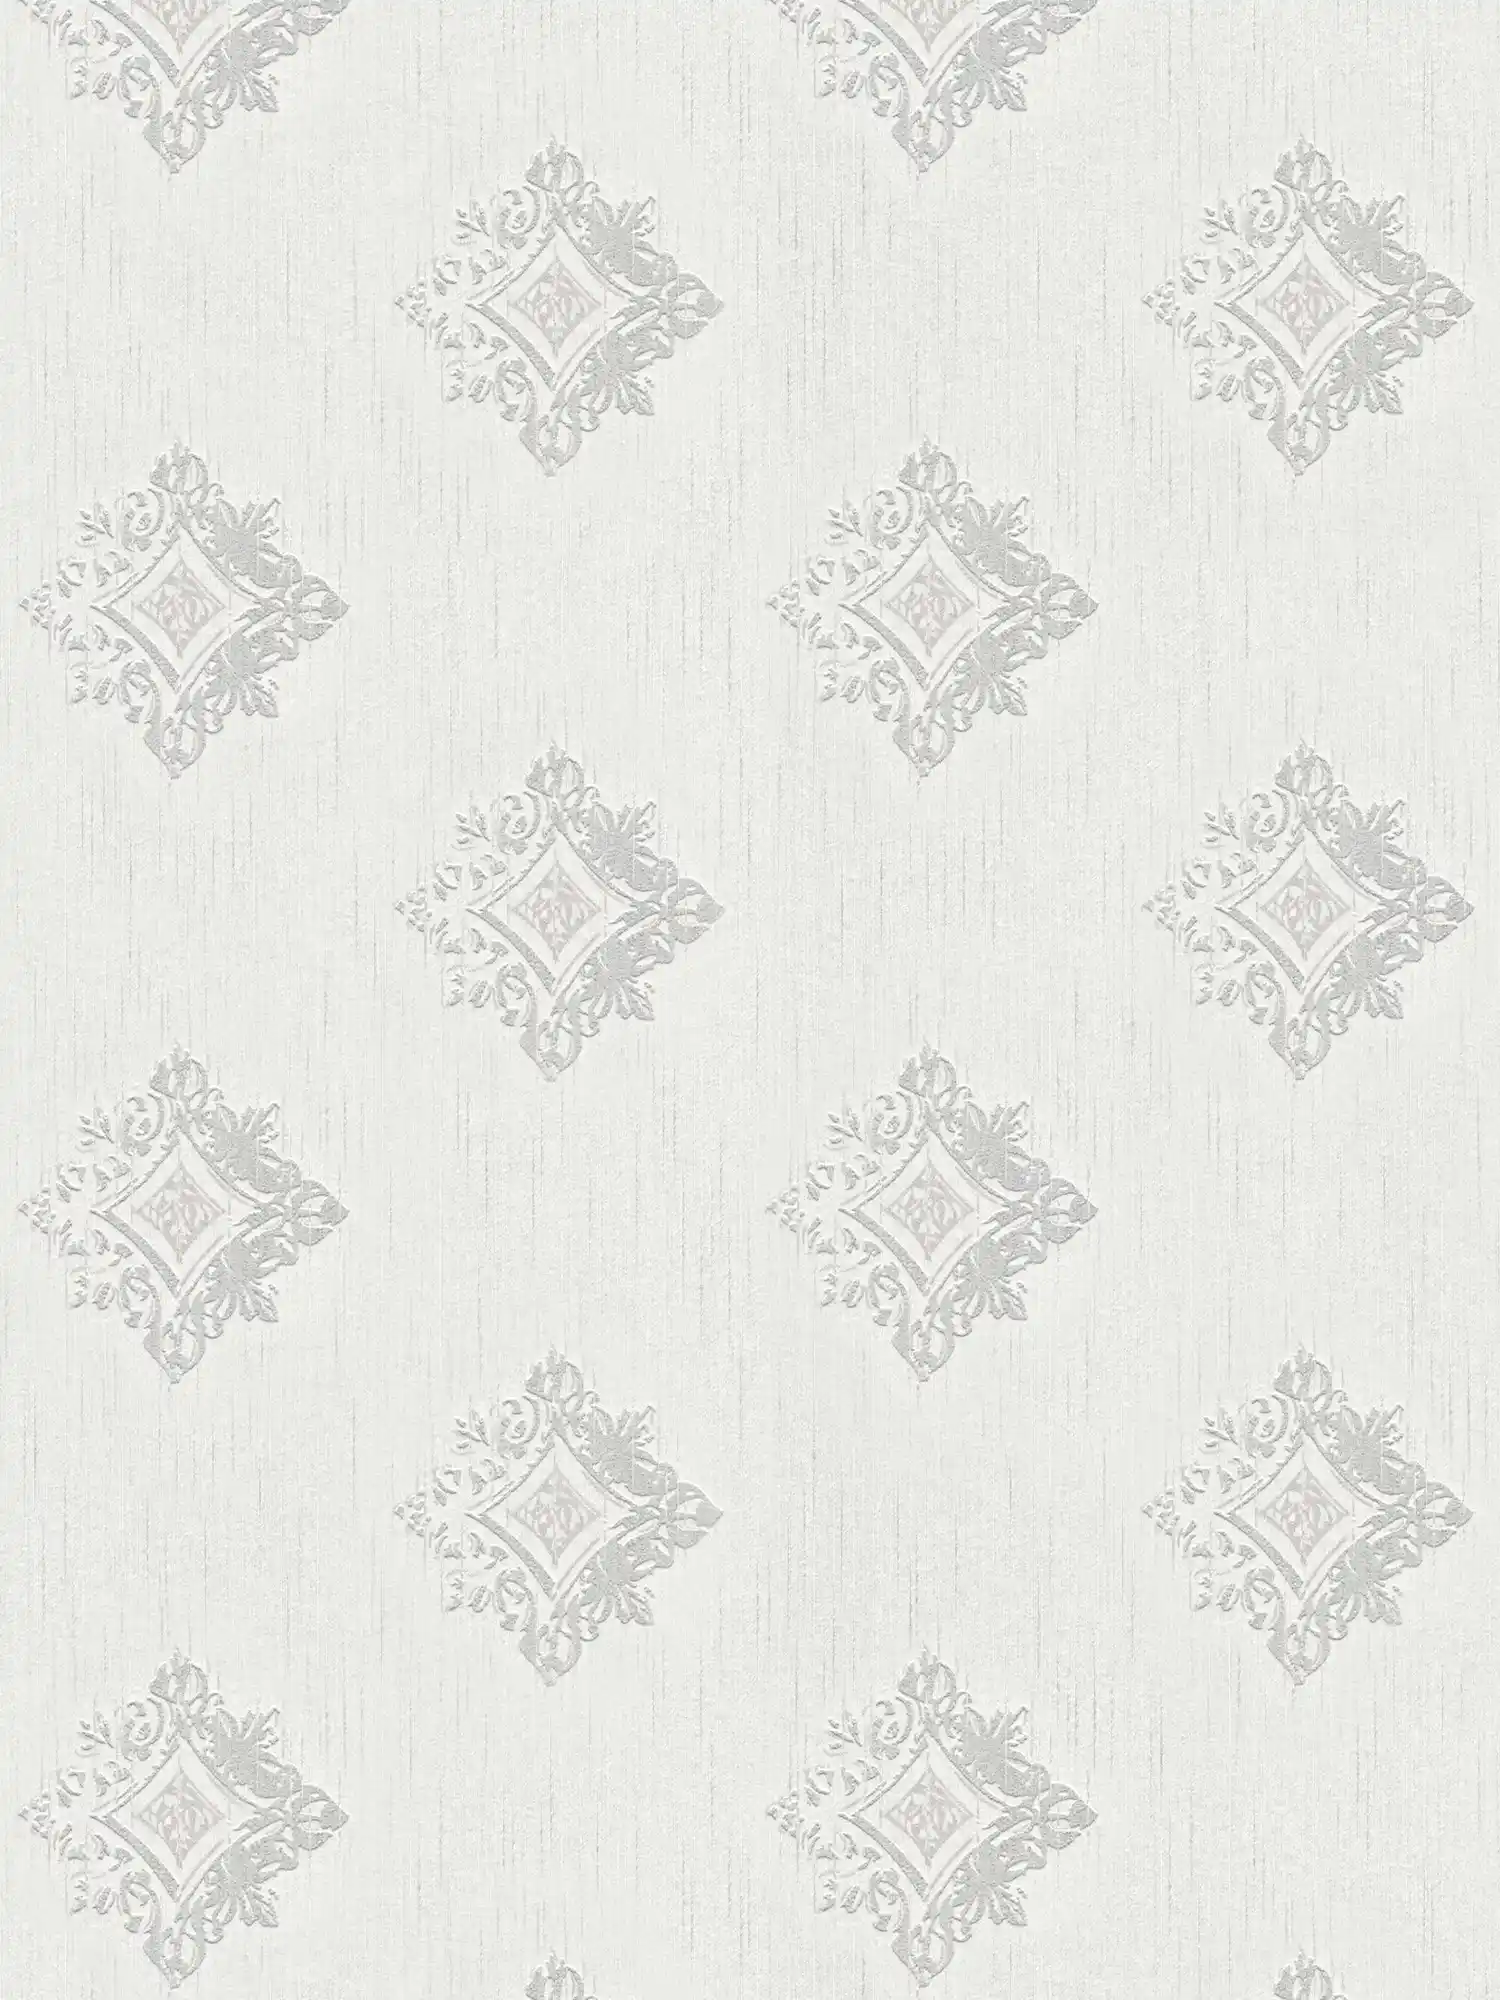         Vliesbehang gipslook met stucco ornamenten & ruitpatroon - grijs, wit
    